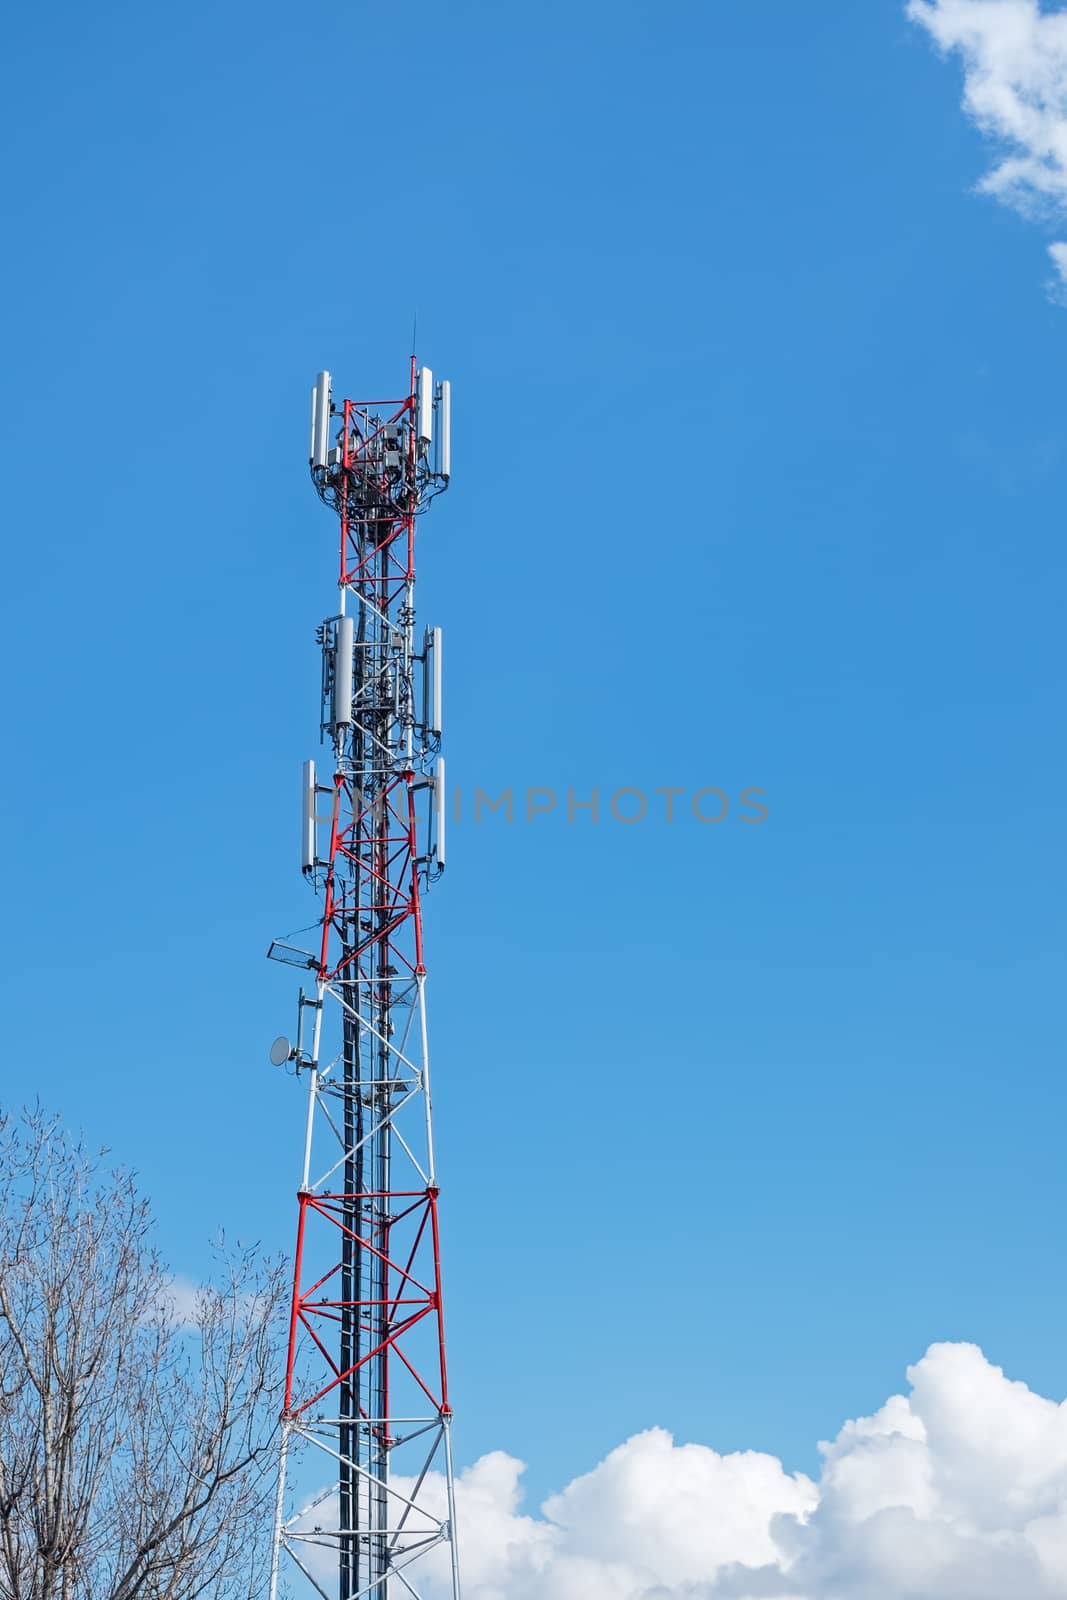 Telecomunication tower (antenna) over blue sky